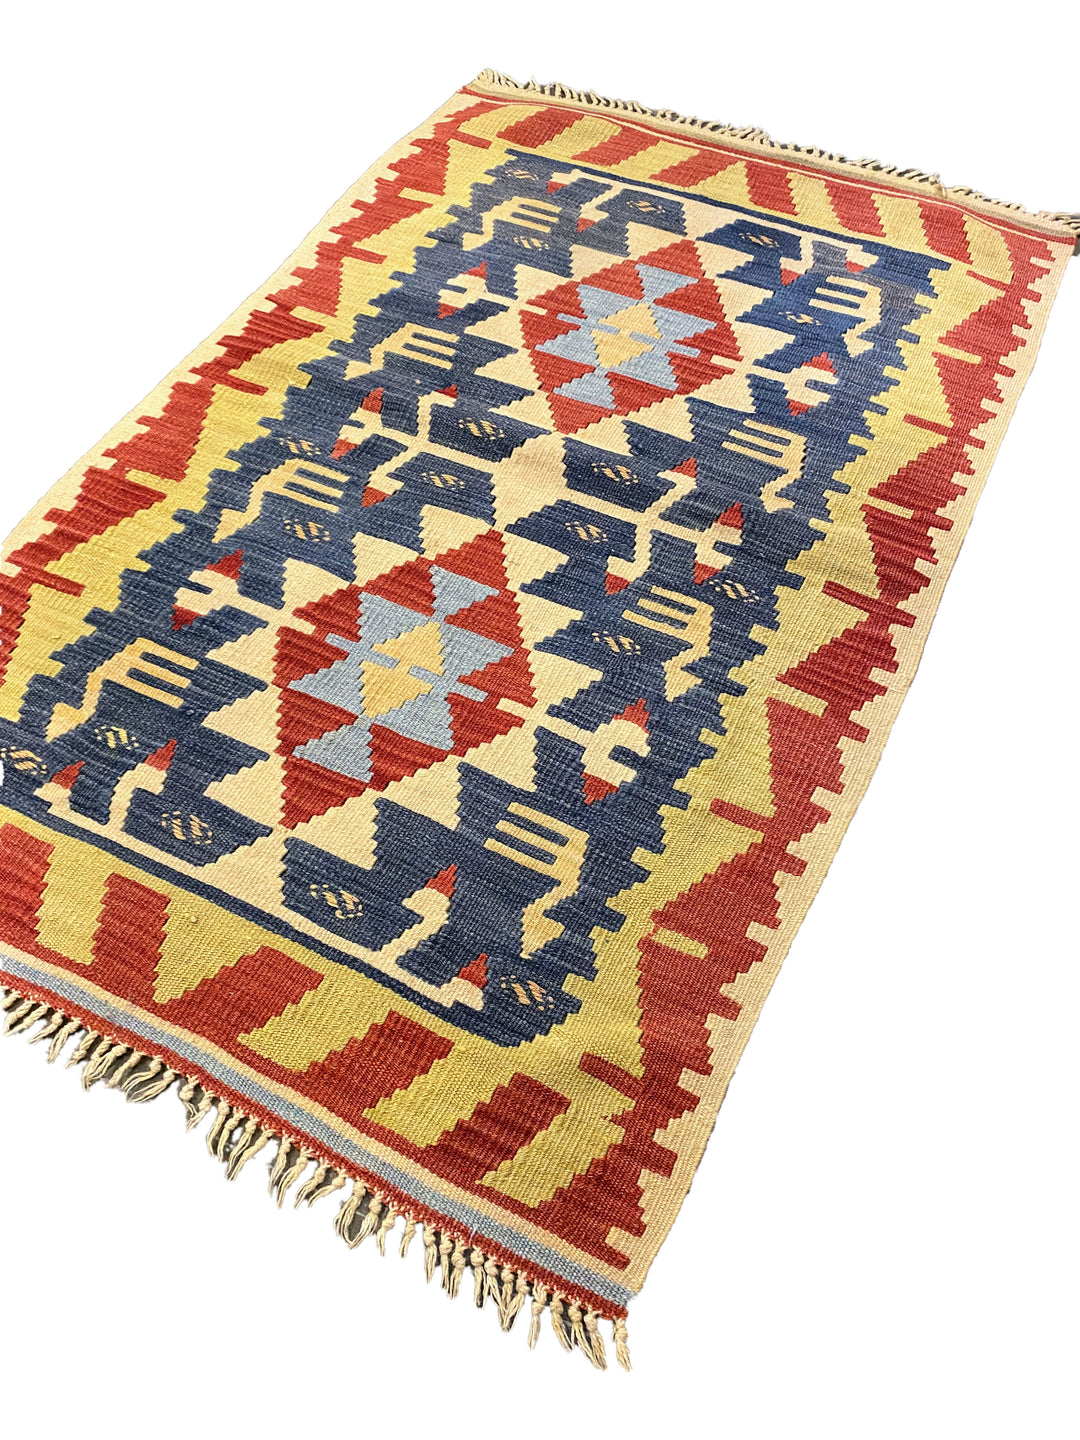 Piraziz - Size: 3.10 x 2.6 - Imam Carpet Co